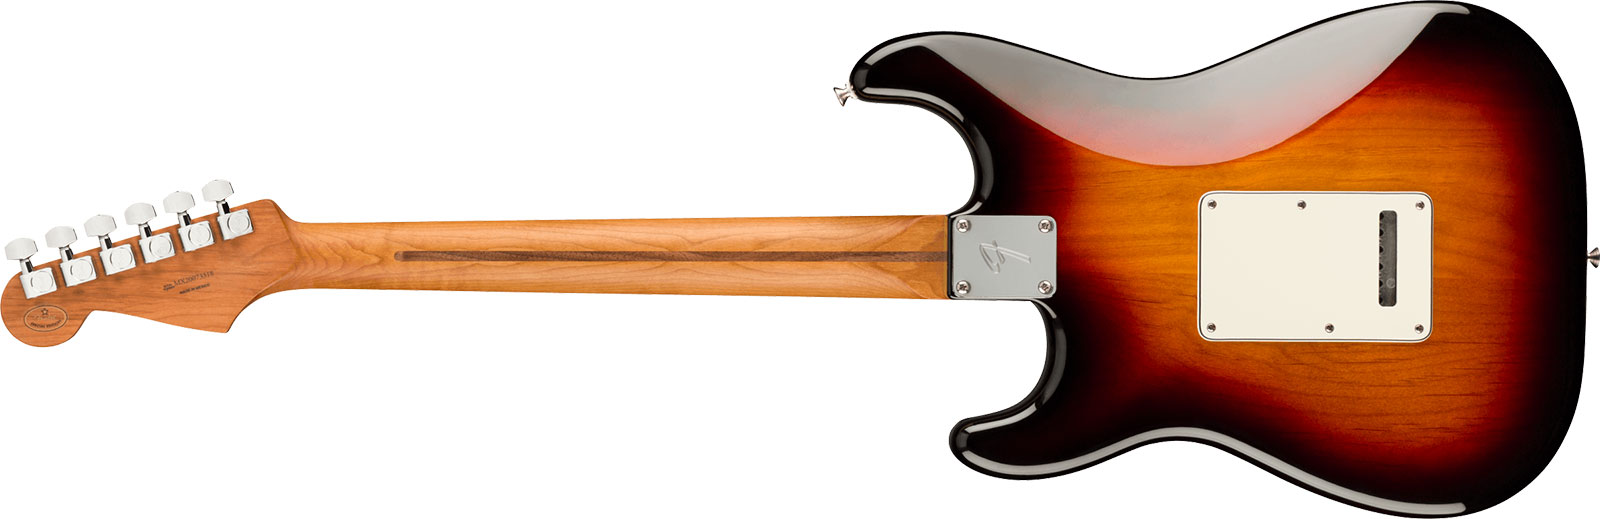 Fender Strat Player Roasted Maple Neck Ltd Mex 3s Trem Mn - 3 Color Sunburst - Guitare Électrique Forme Str - Variation 1